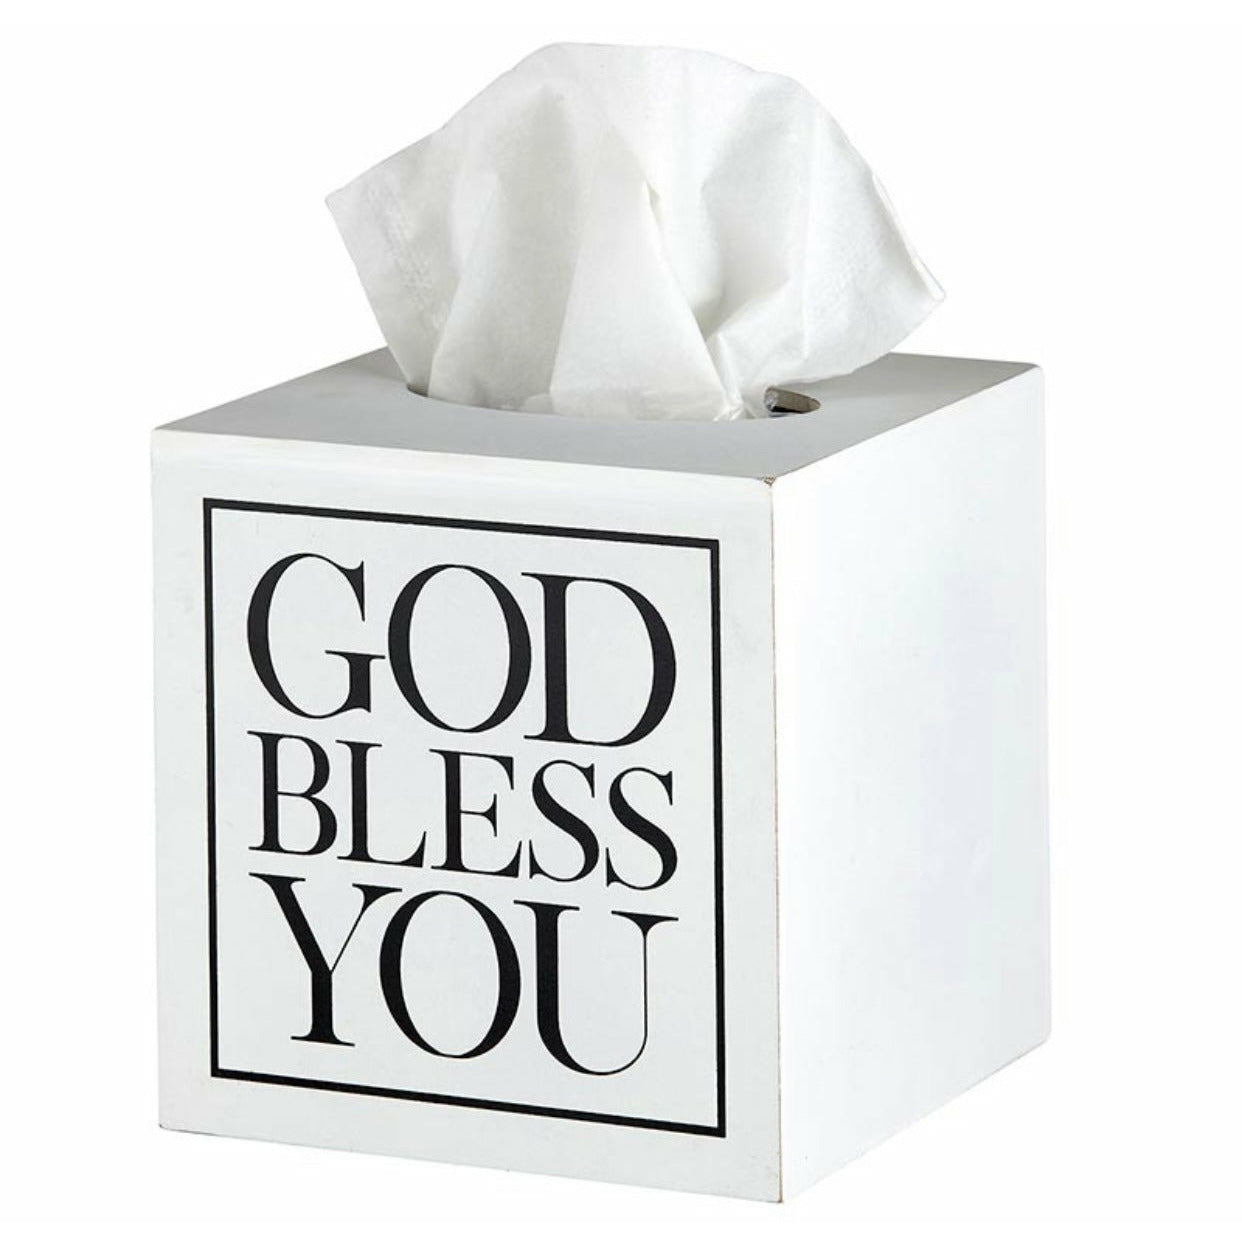 God Bless You - Tissue box